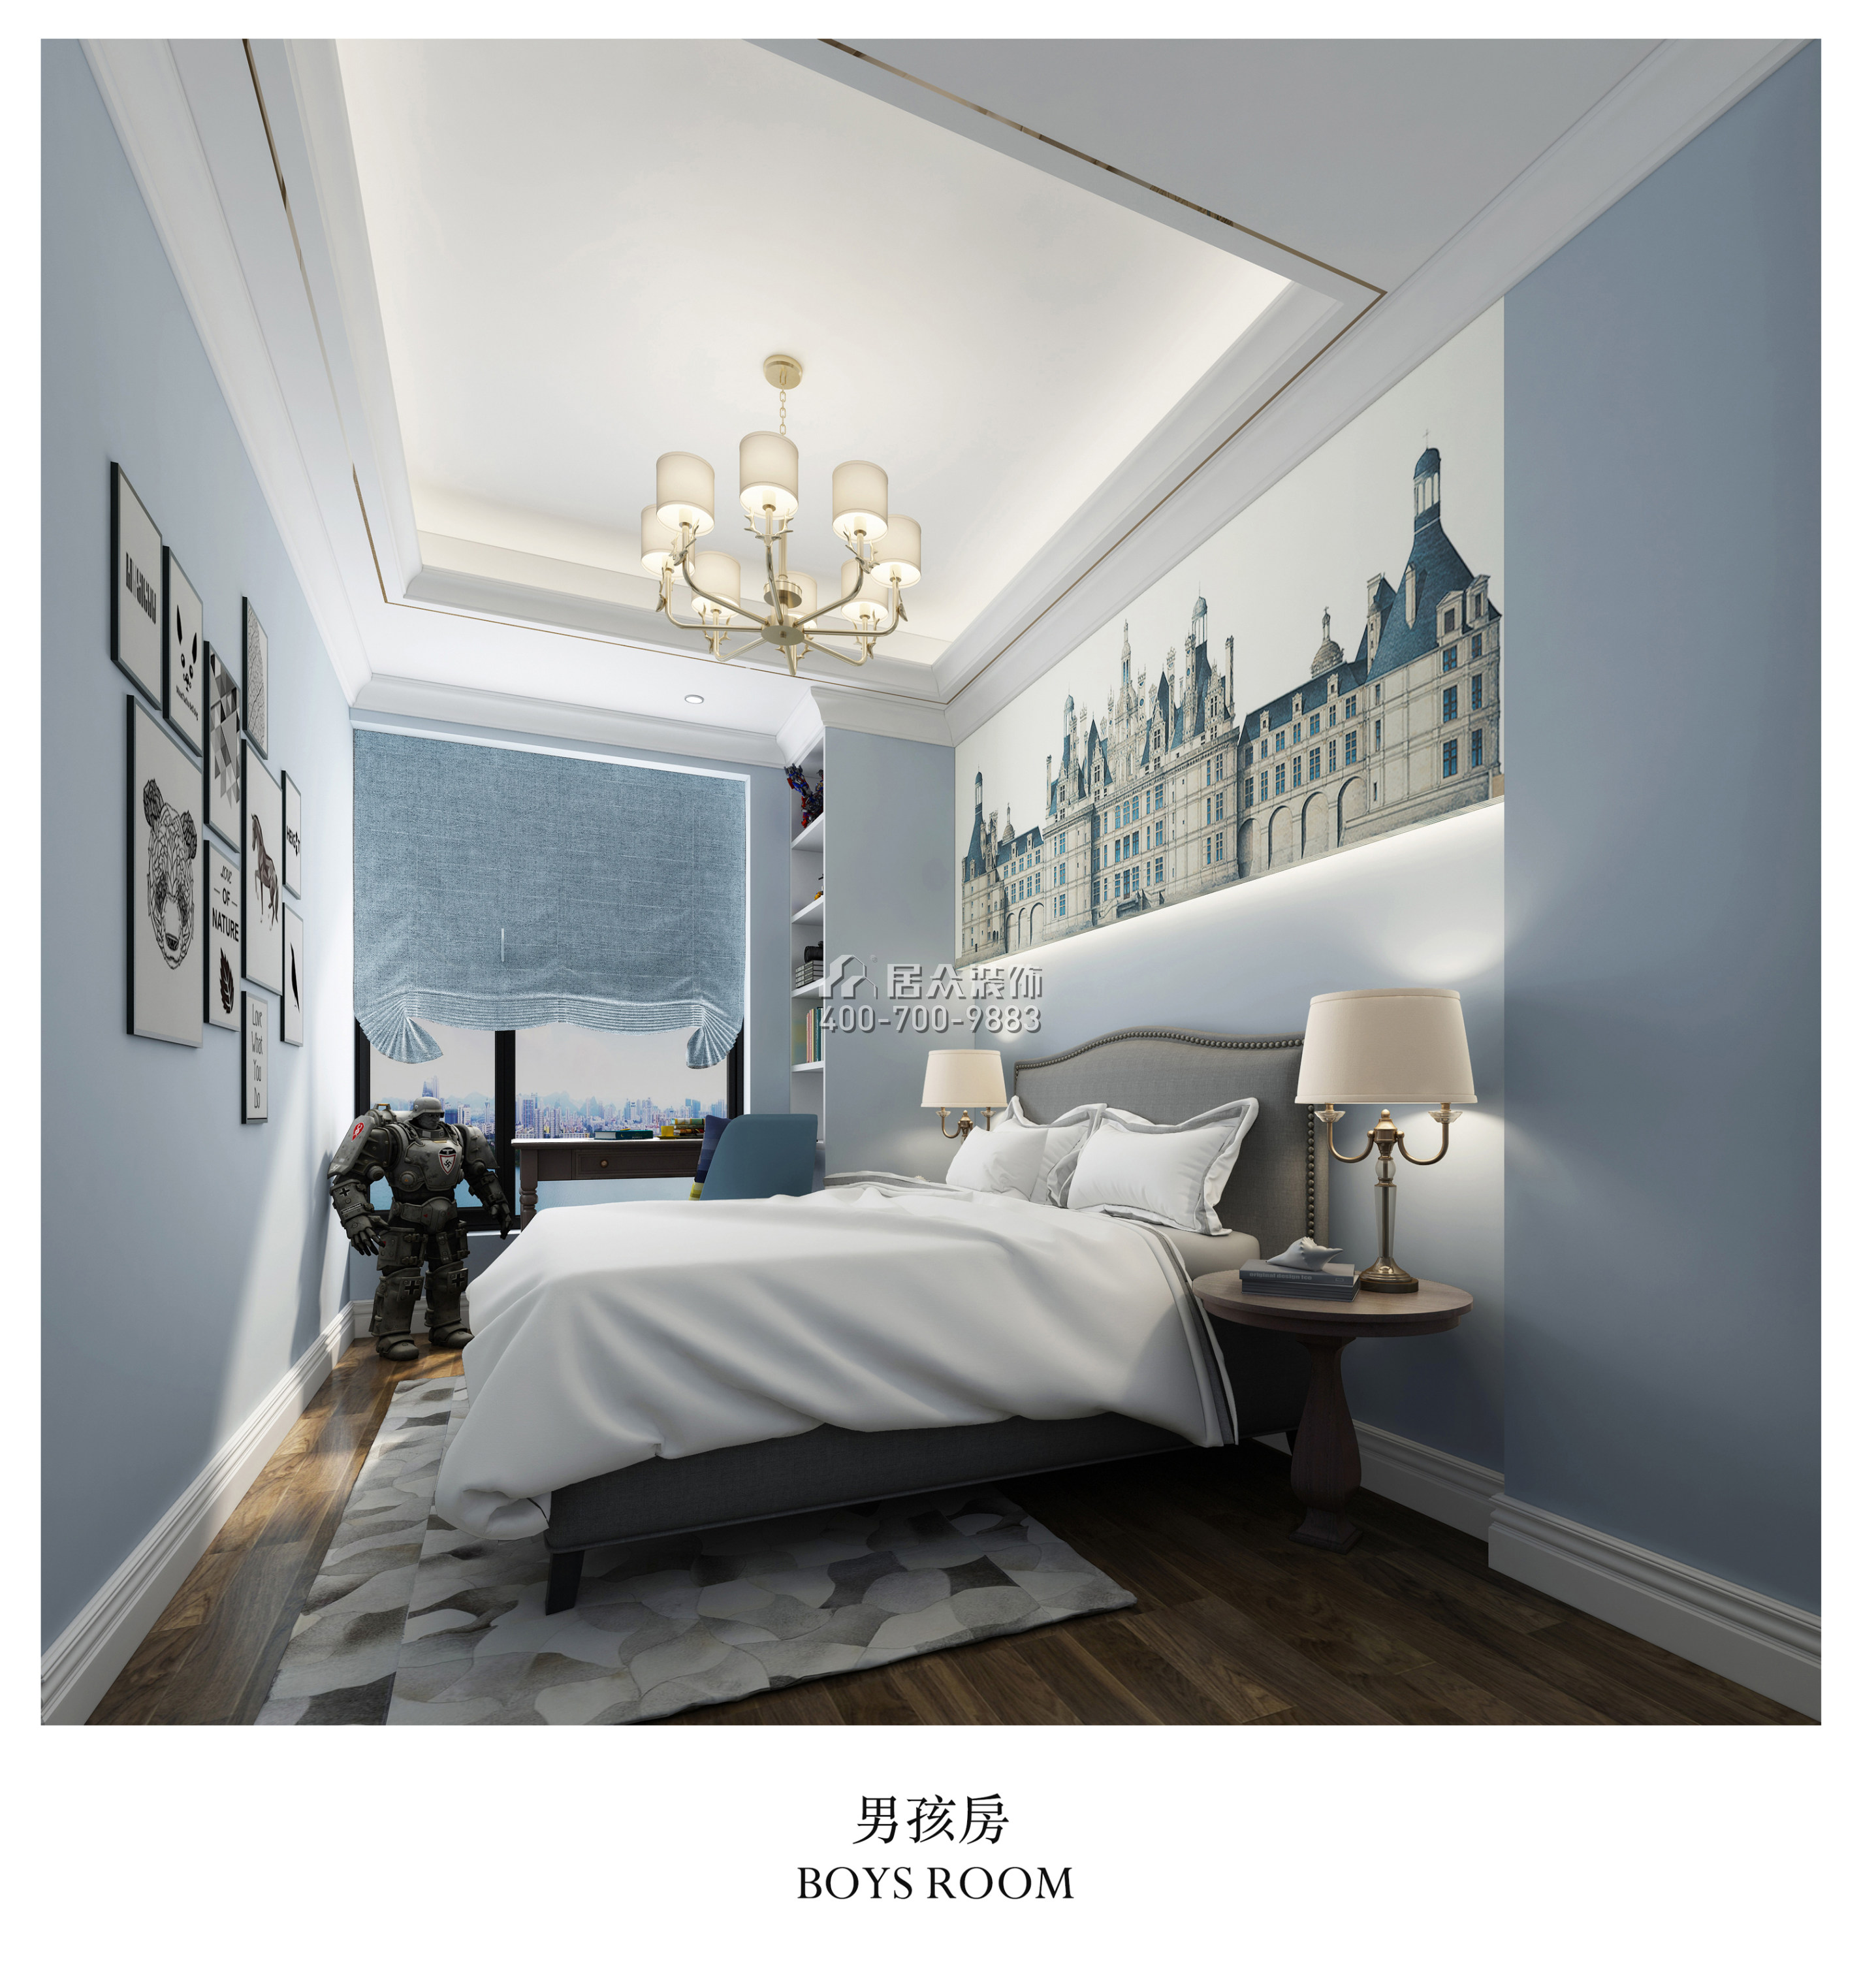 漢森吉祥龍180平方米歐式風格平層戶型臥室裝修效果圖